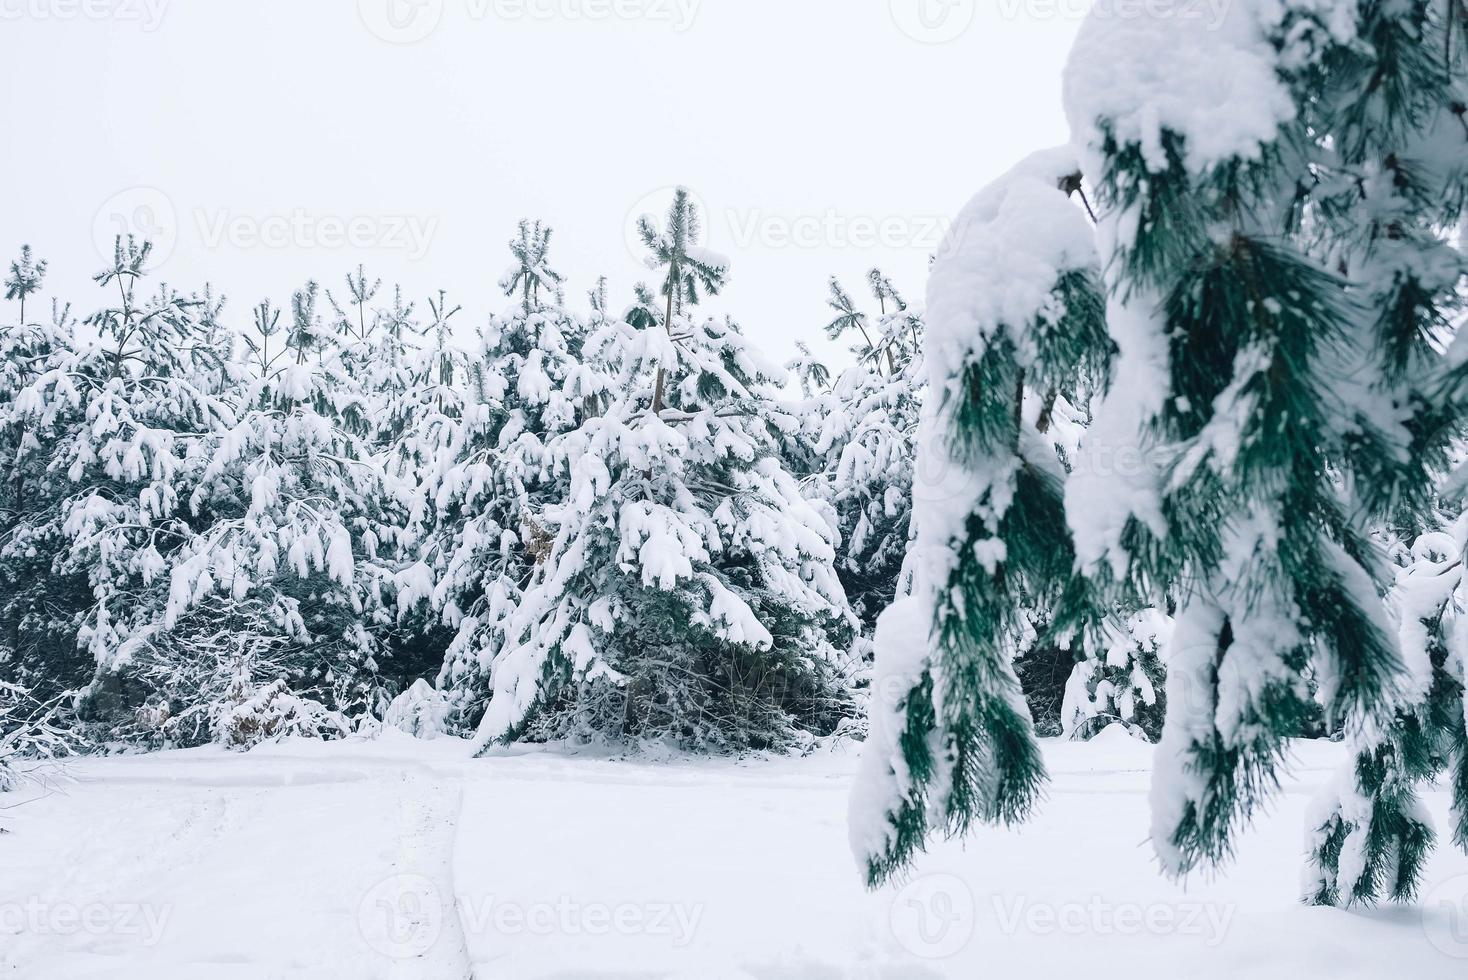 floresta e árvores de natal cobertas de neve em um dia de inverno foto